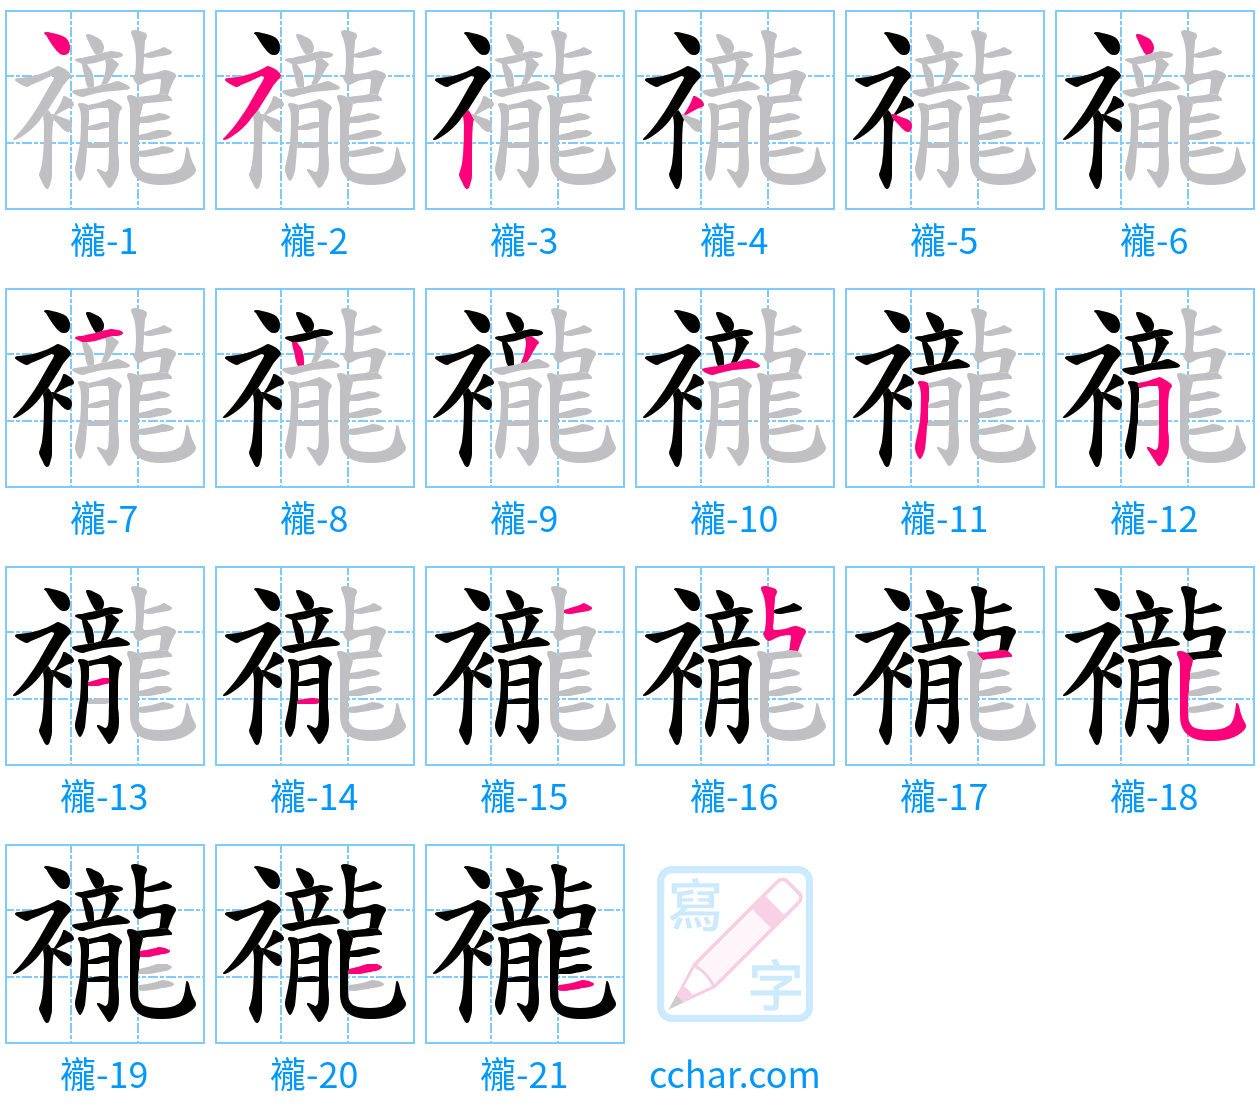 襱 stroke order step-by-step diagram